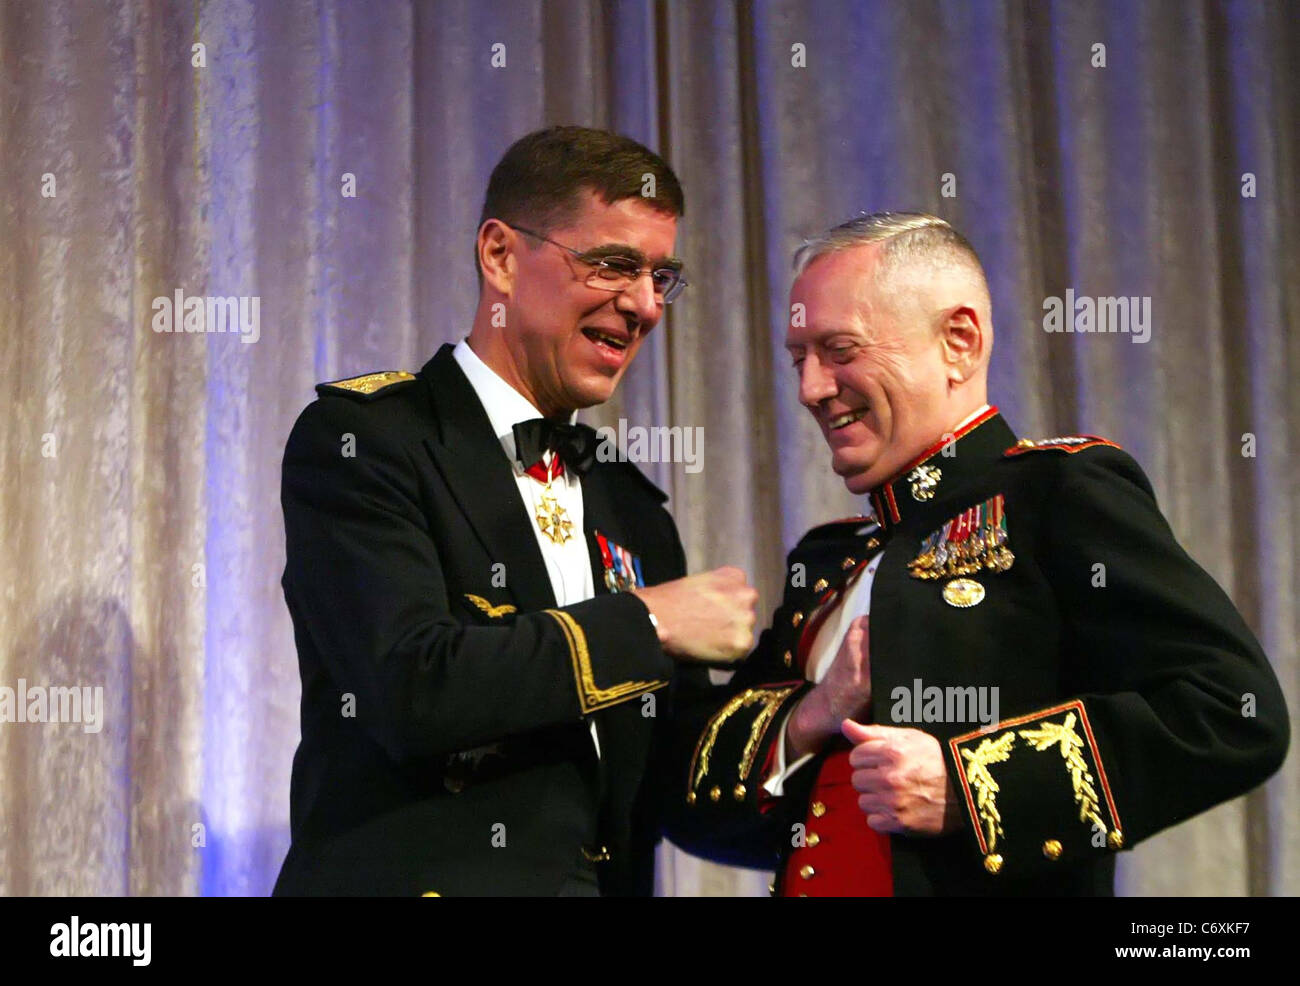 El General James Mattis, General Stephan Abrial en 2010, el Consejo Atlántico cena de entrega de premios en el Hotel Ritz Carlton de Washington, DC. Foto de stock